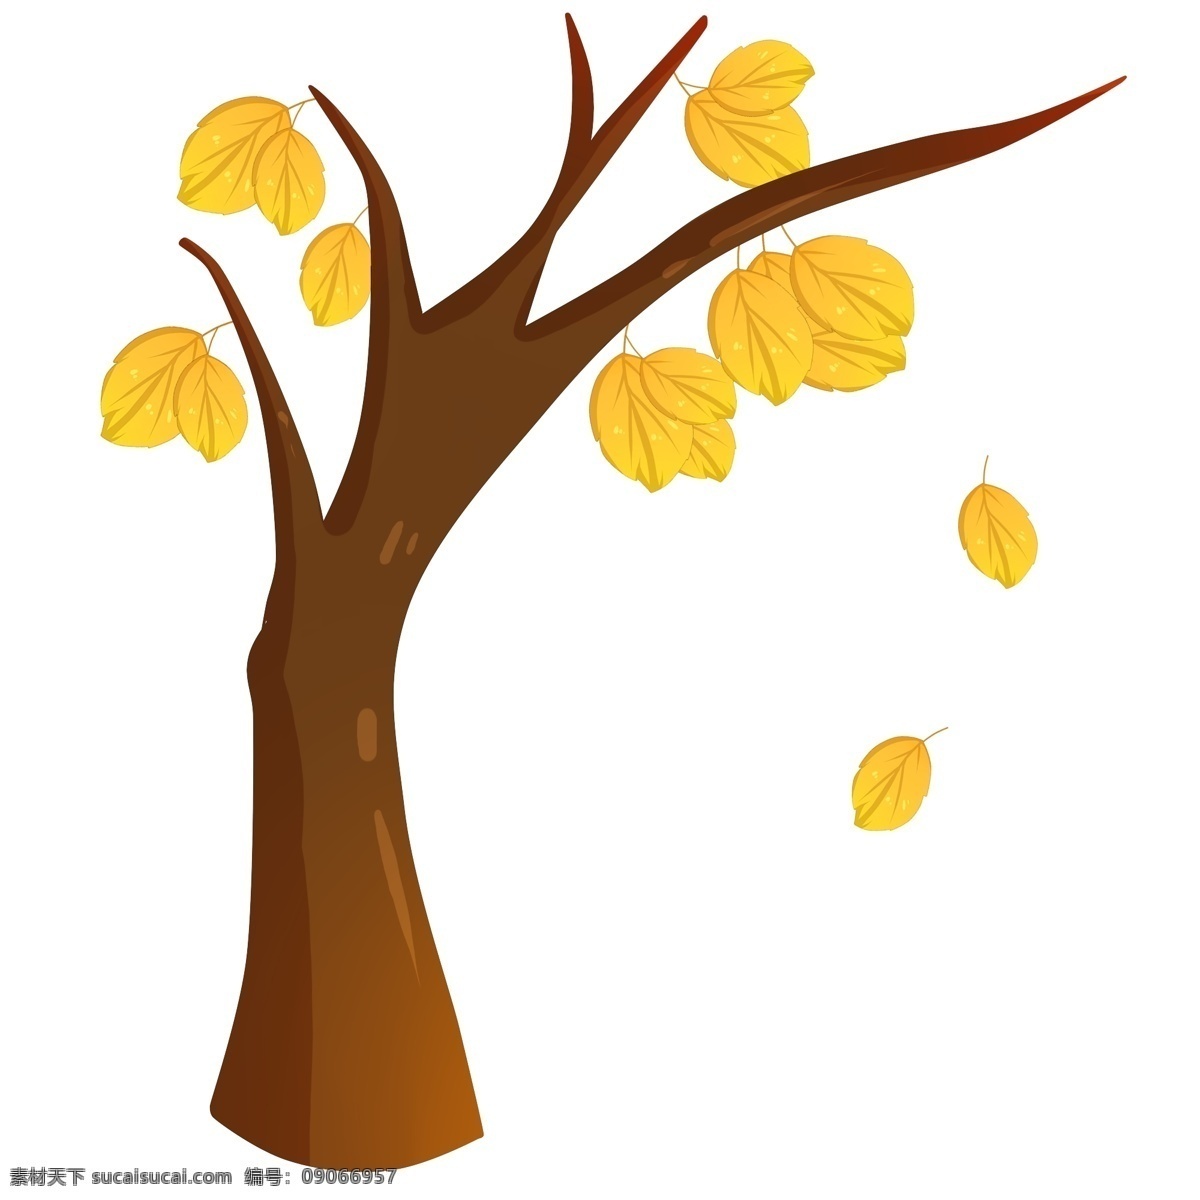 手绘 大树 落叶 插画 手绘大树 树木落叶 黄色树叶 飘落的树叶 黄色叶子 卡通大树 卡通黄叶 树木 树叶